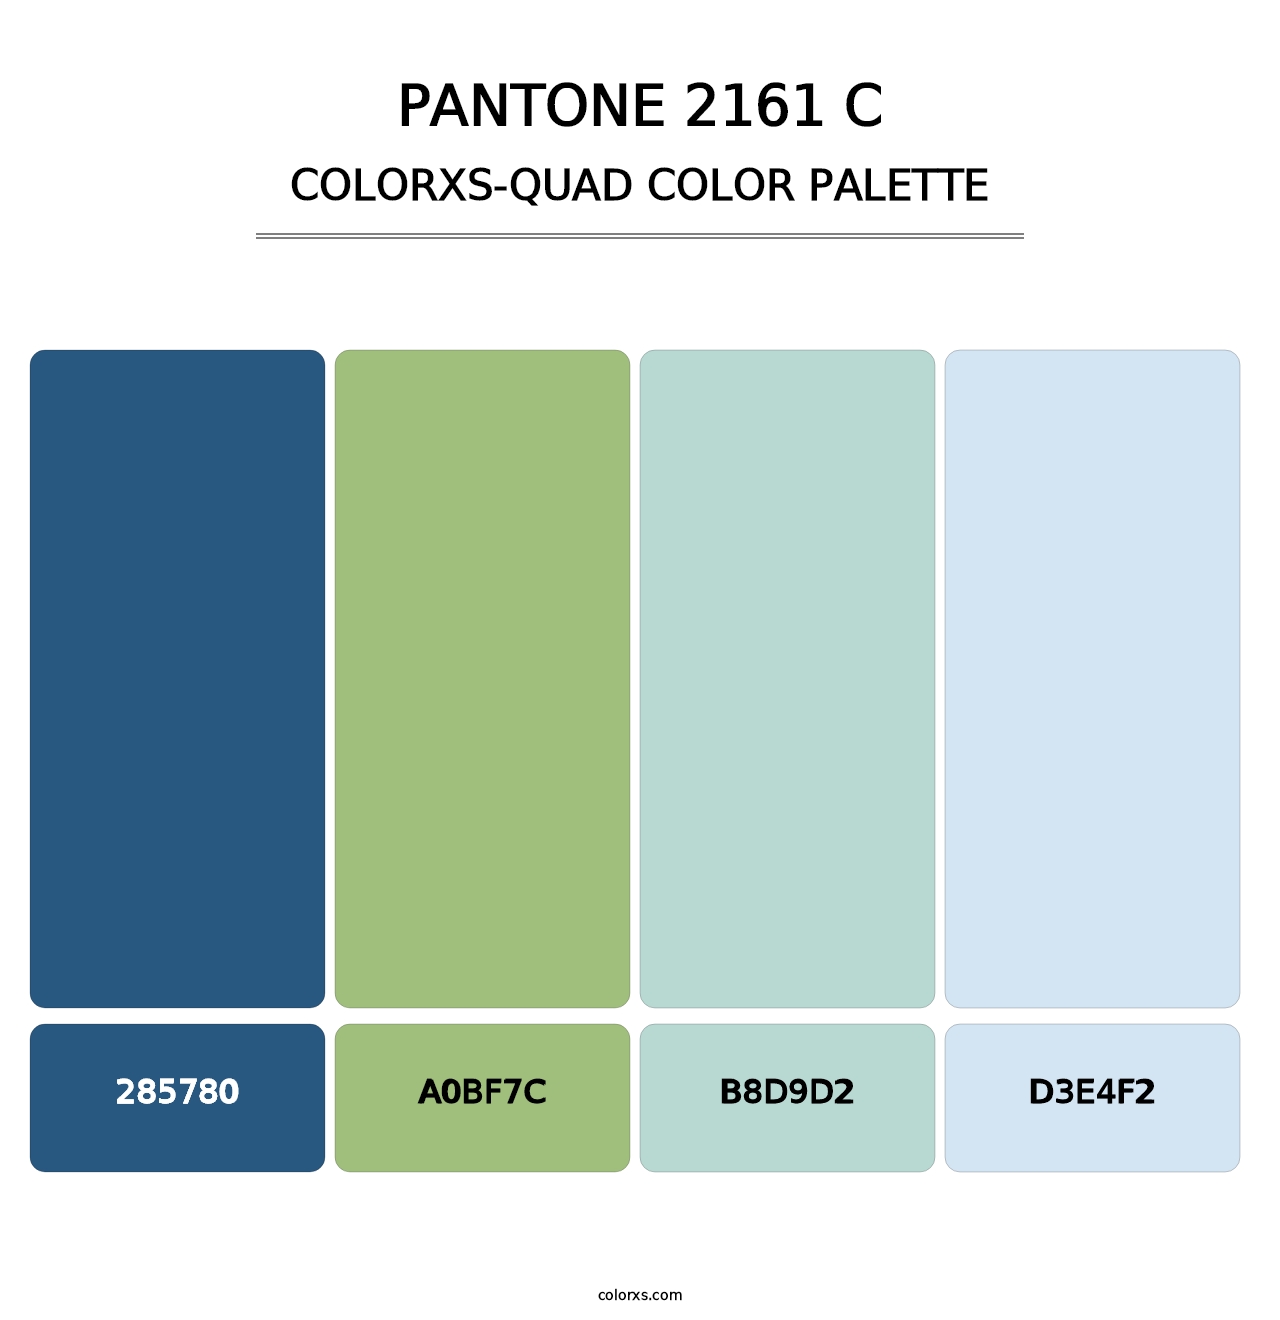 PANTONE 2161 C - Colorxs Quad Palette